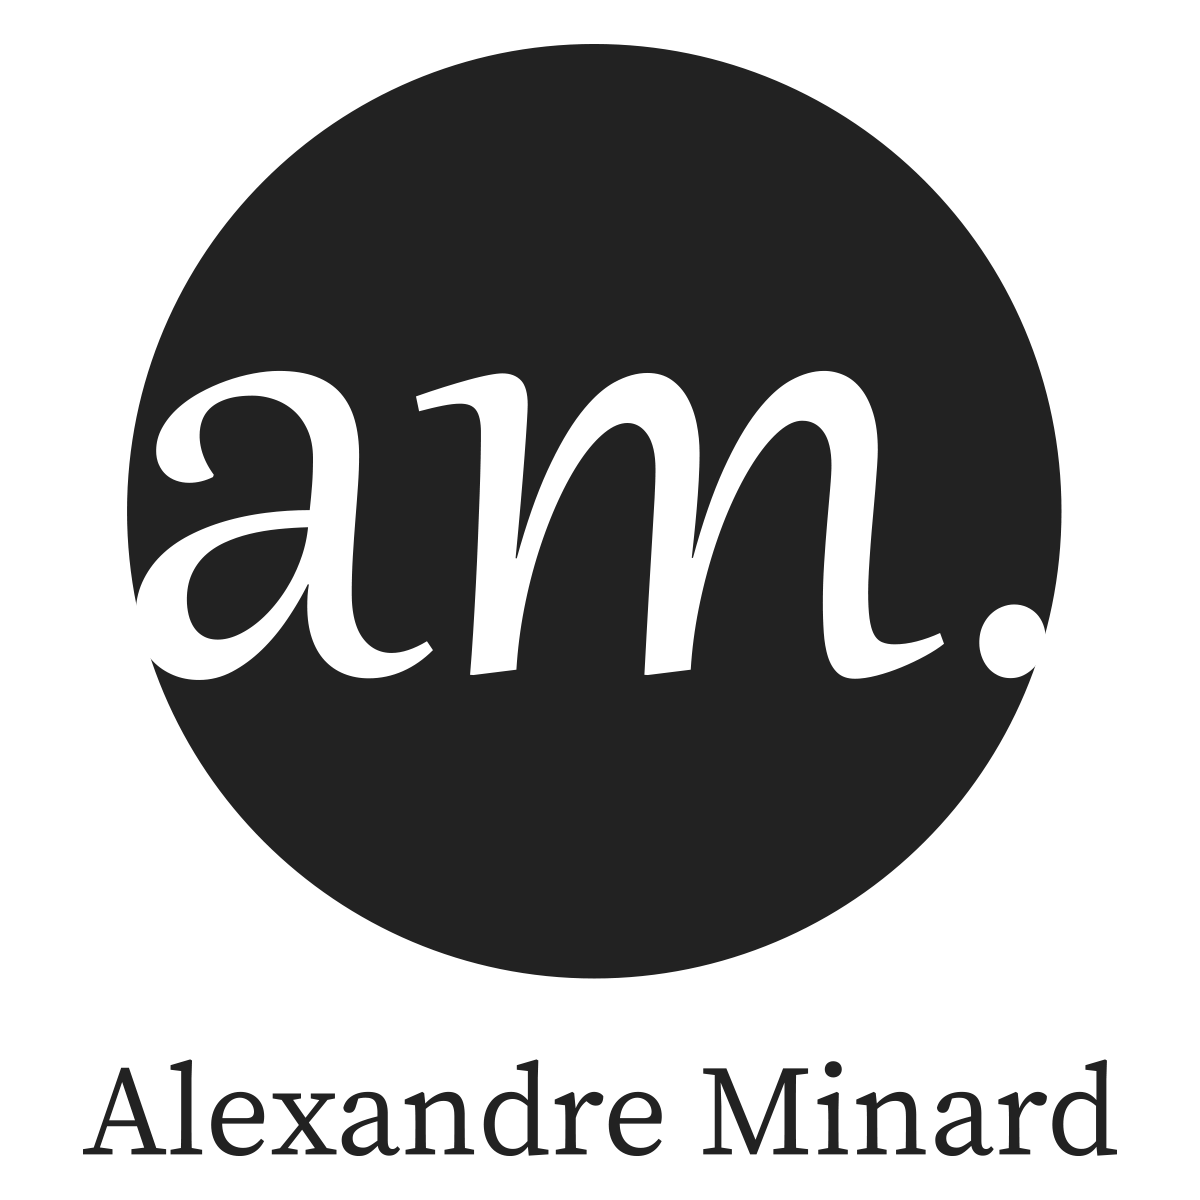 Alexandre Minard